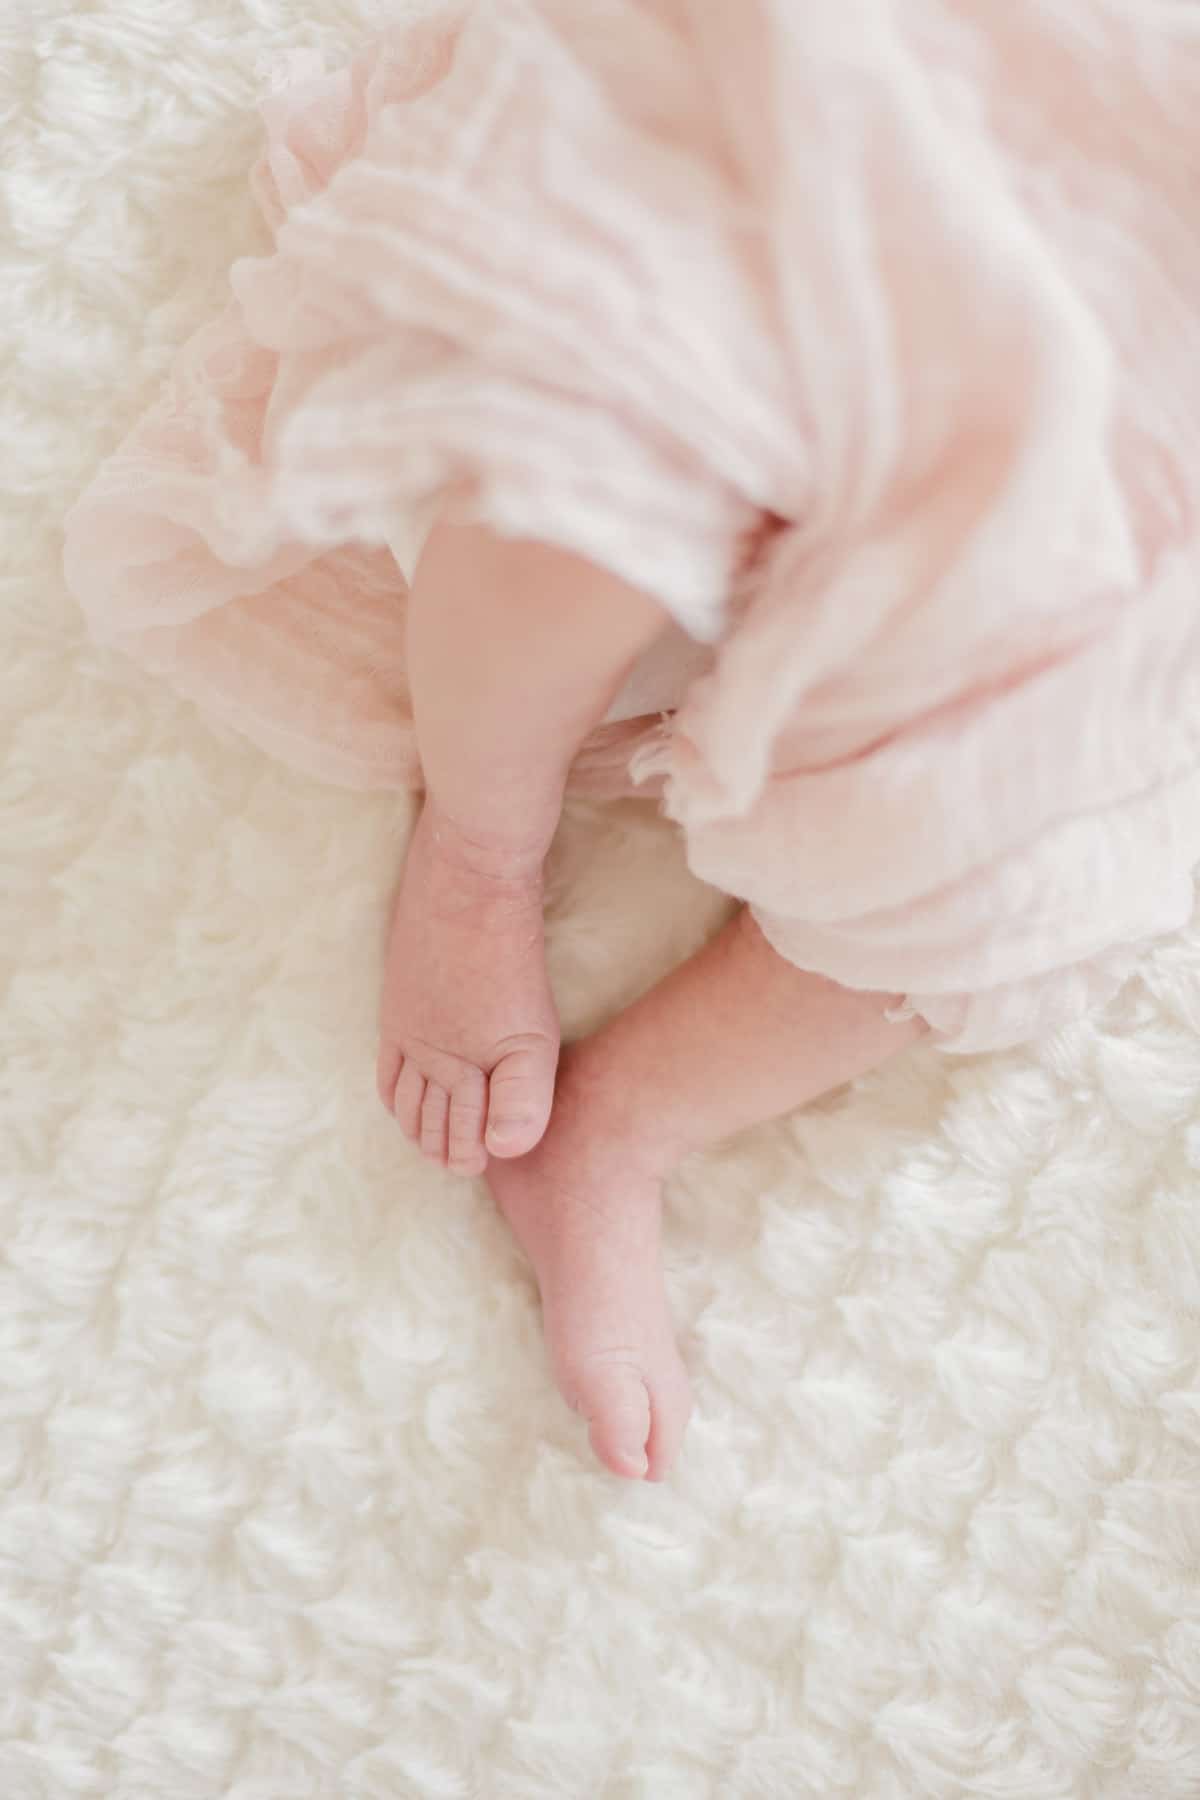 photographe bébé nouveau-né maternité bordeaux séance photo maison à domicile lifestyle fineart francais sarah miramon carla 01